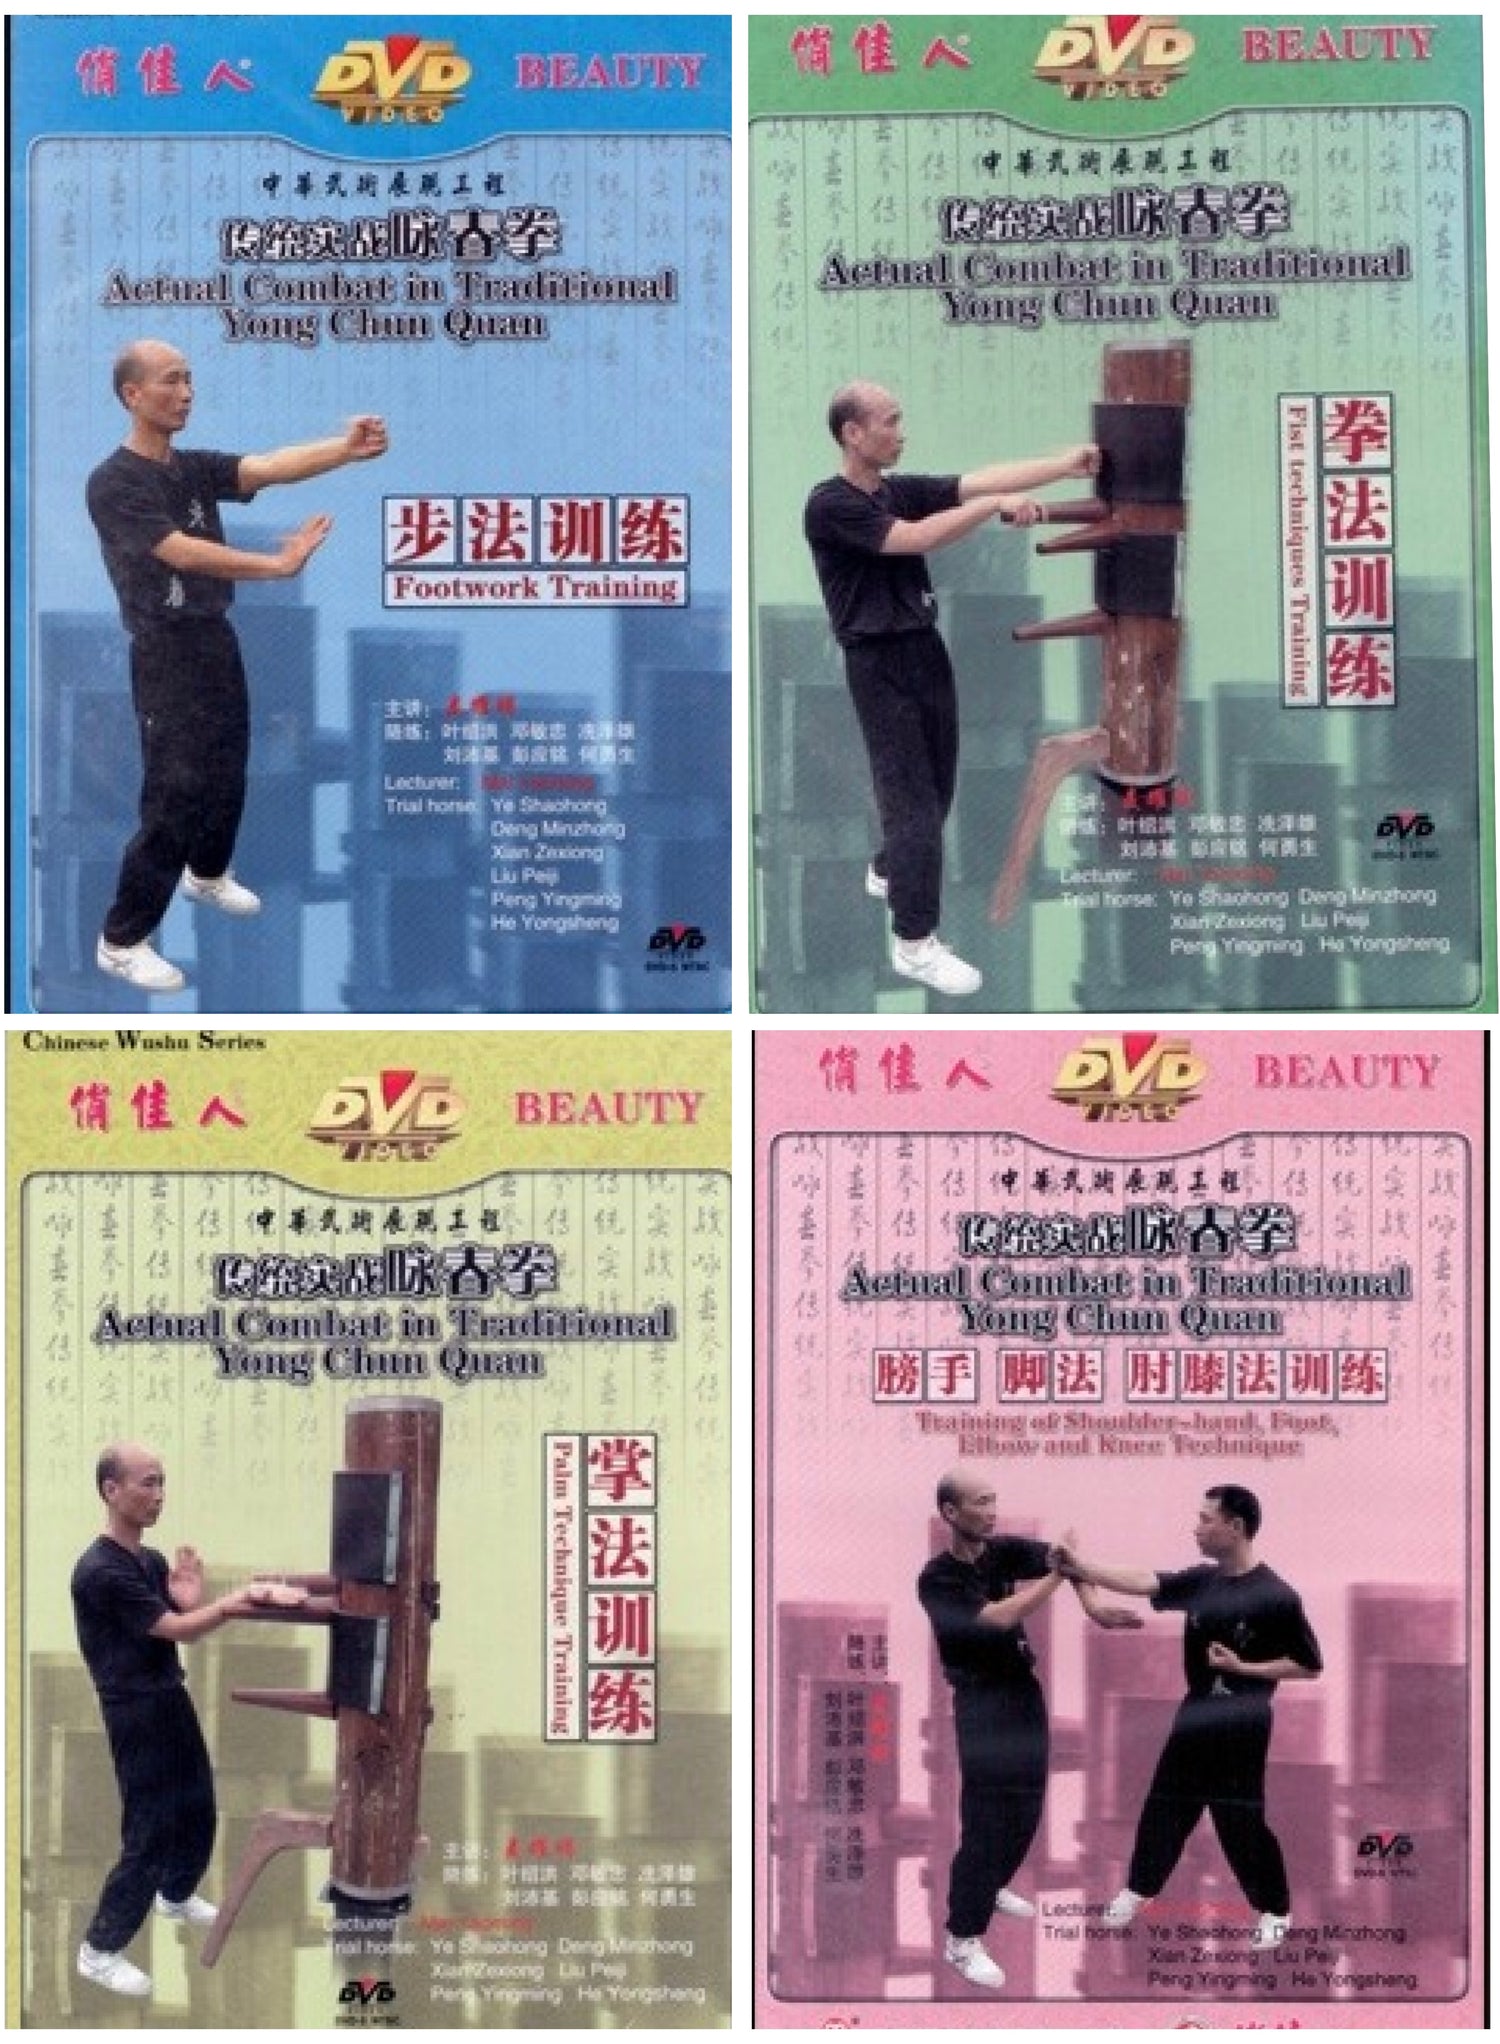 Actual Combat in Traditional Yong Chun ( Wing Chun ) Quan 4 DVD Set by Mai Yaoming